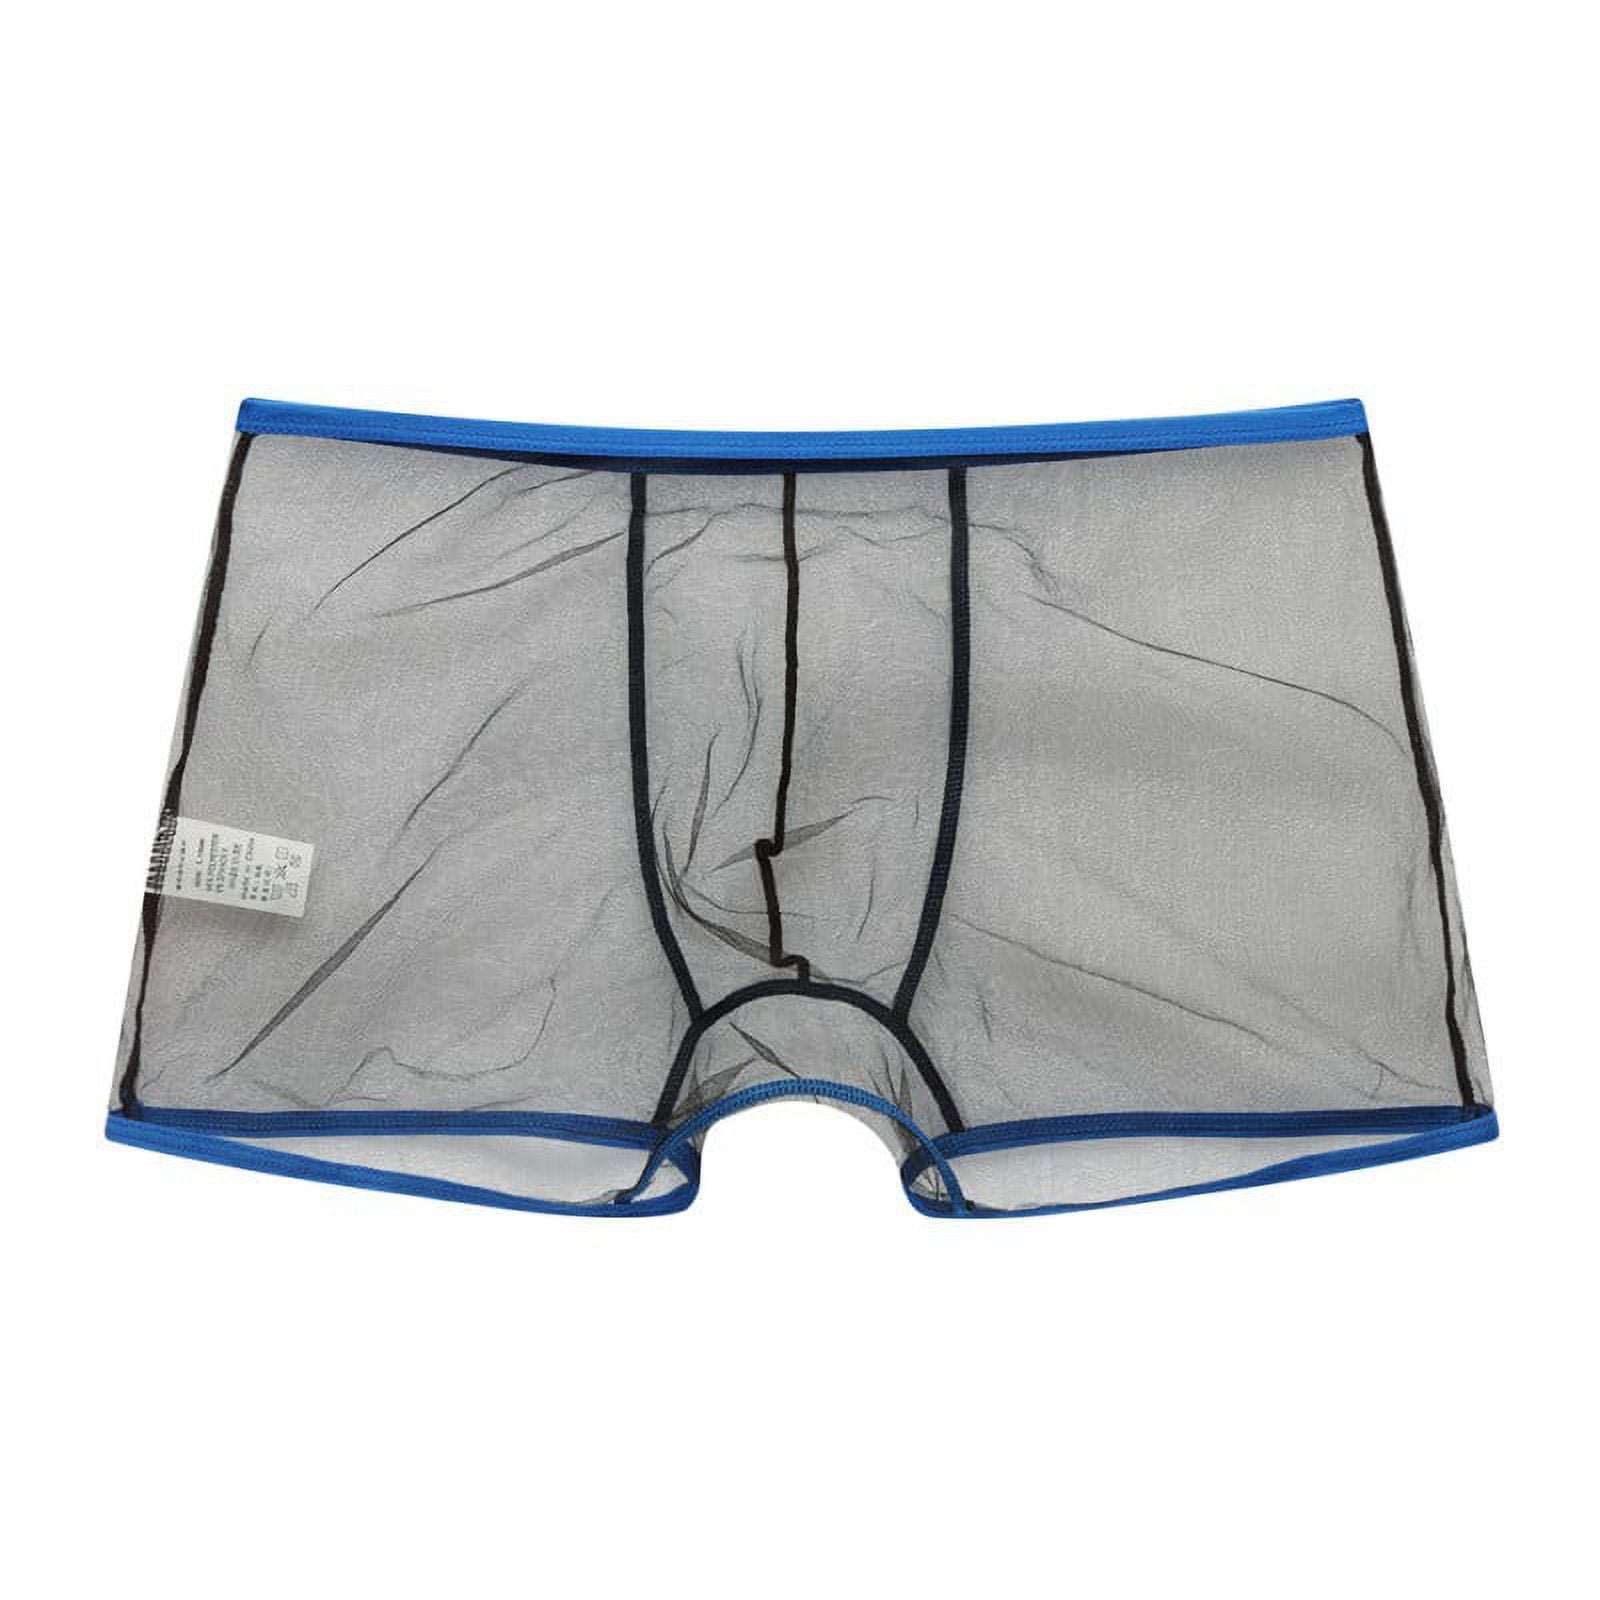 Transparent Underwear Shorts